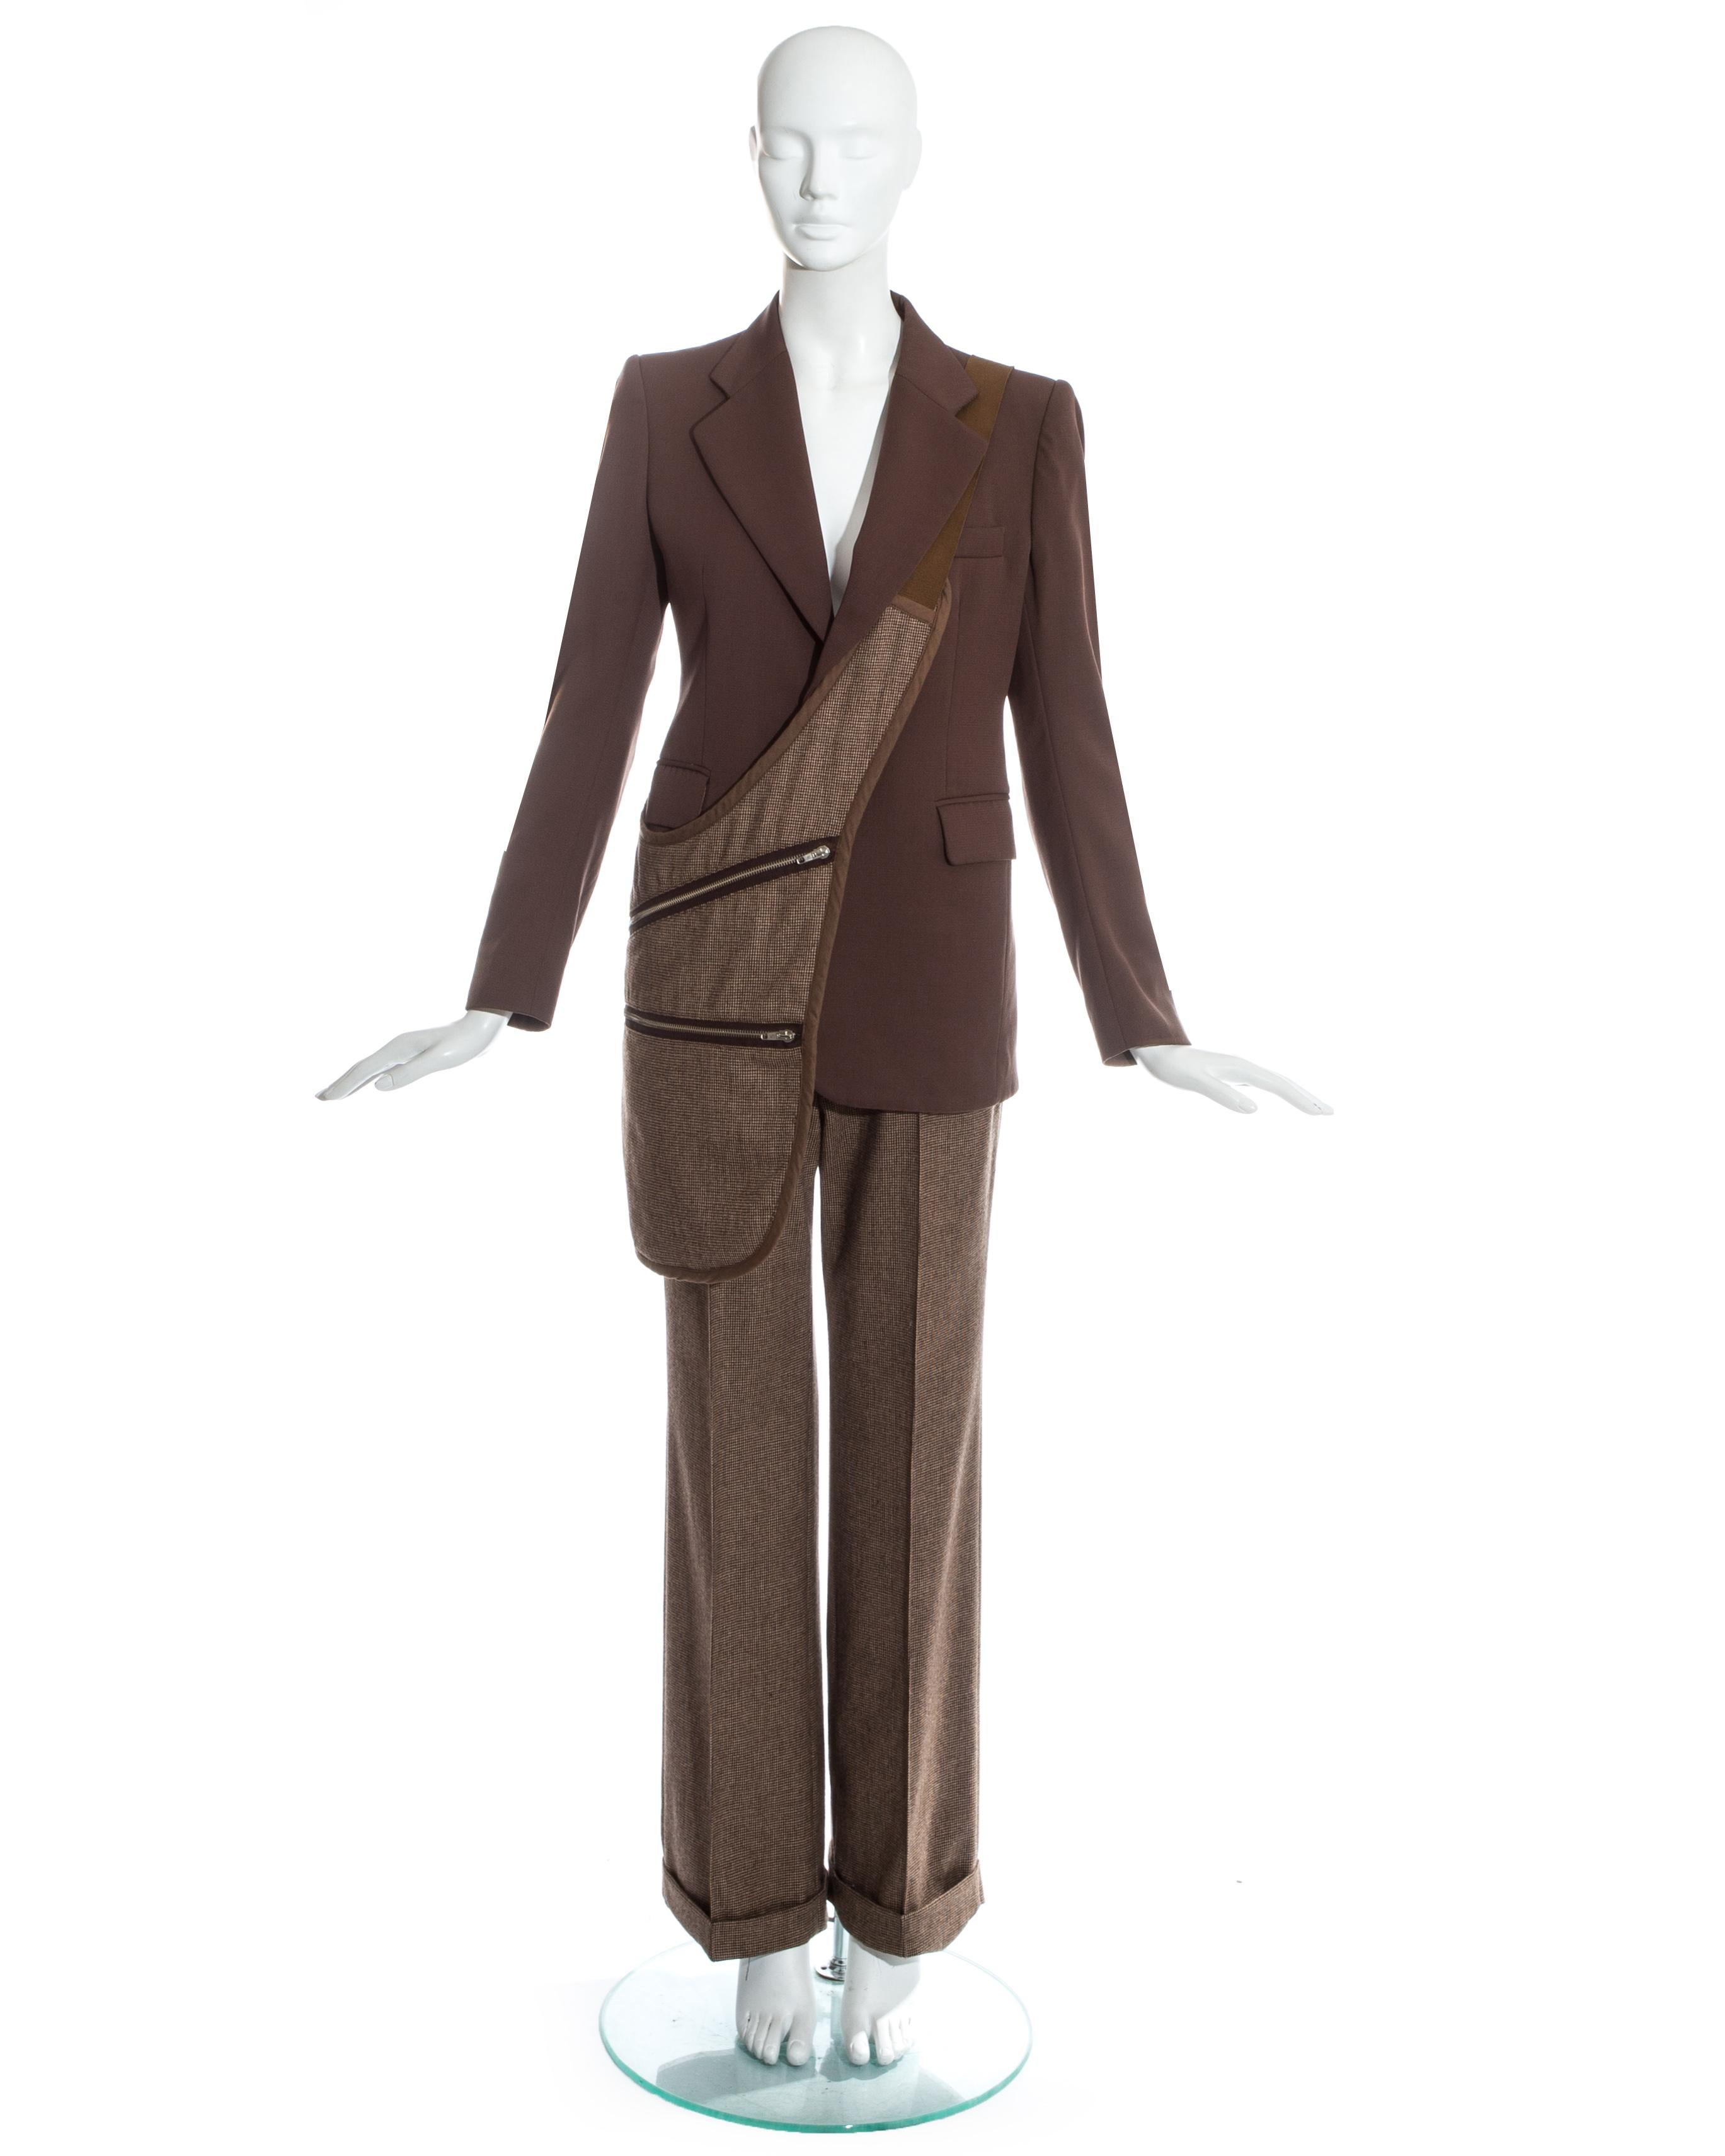 Martin Margiela ; costume pantalon en laine tweed marron avec sacoche assortie. 

Automne-Hiver 1998